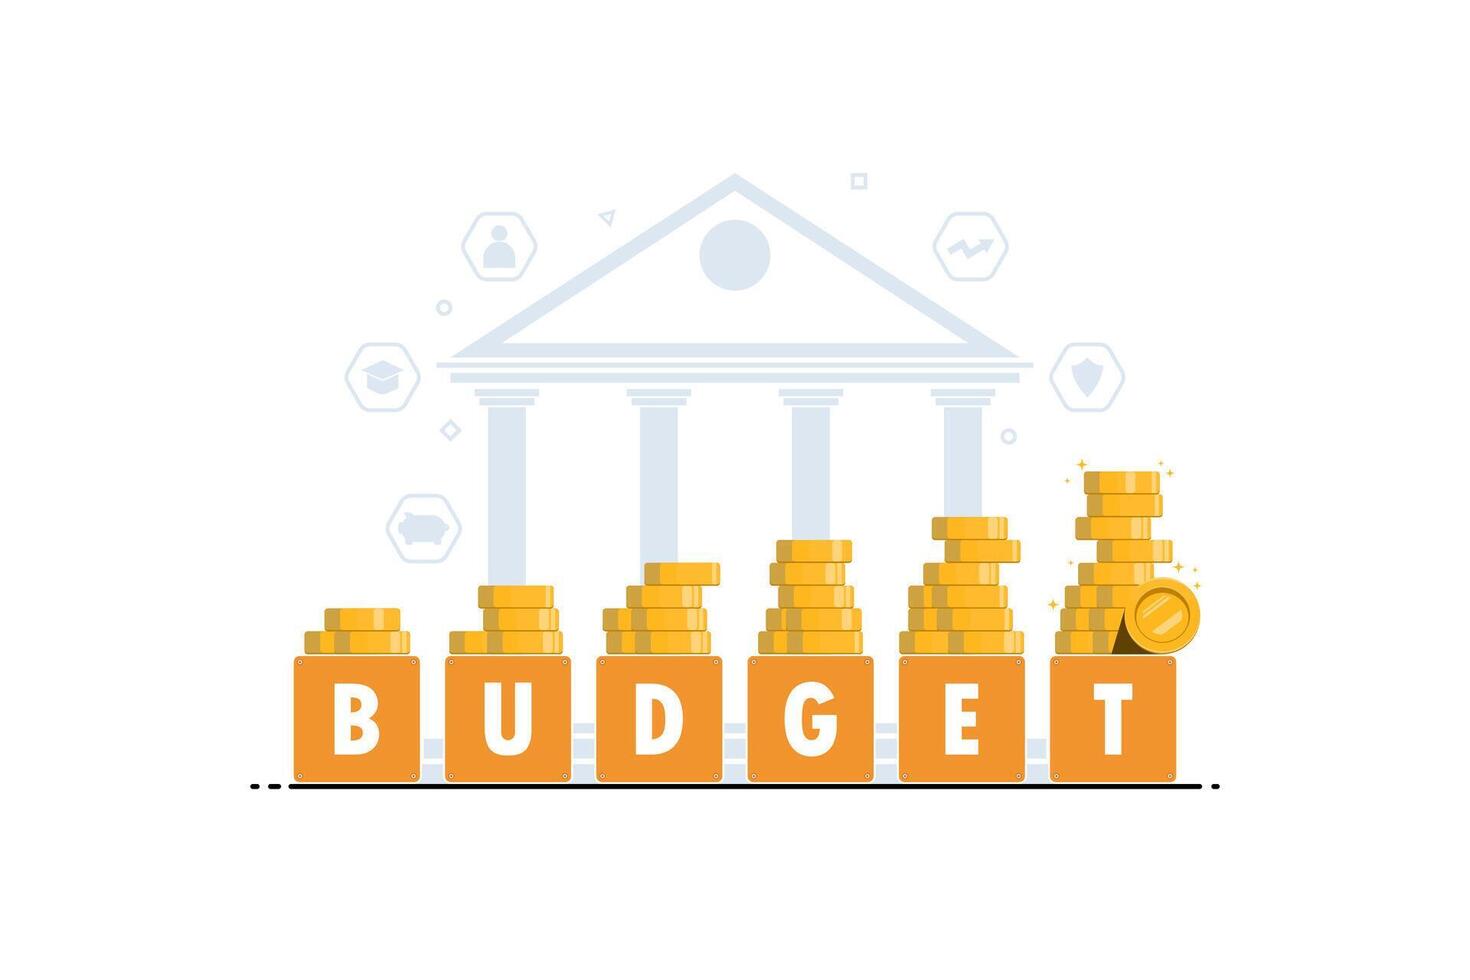 budget planera finansiell till de framtida begrepp, steg till finansiell tillväxt, digital marknadsföring illustration. vektor